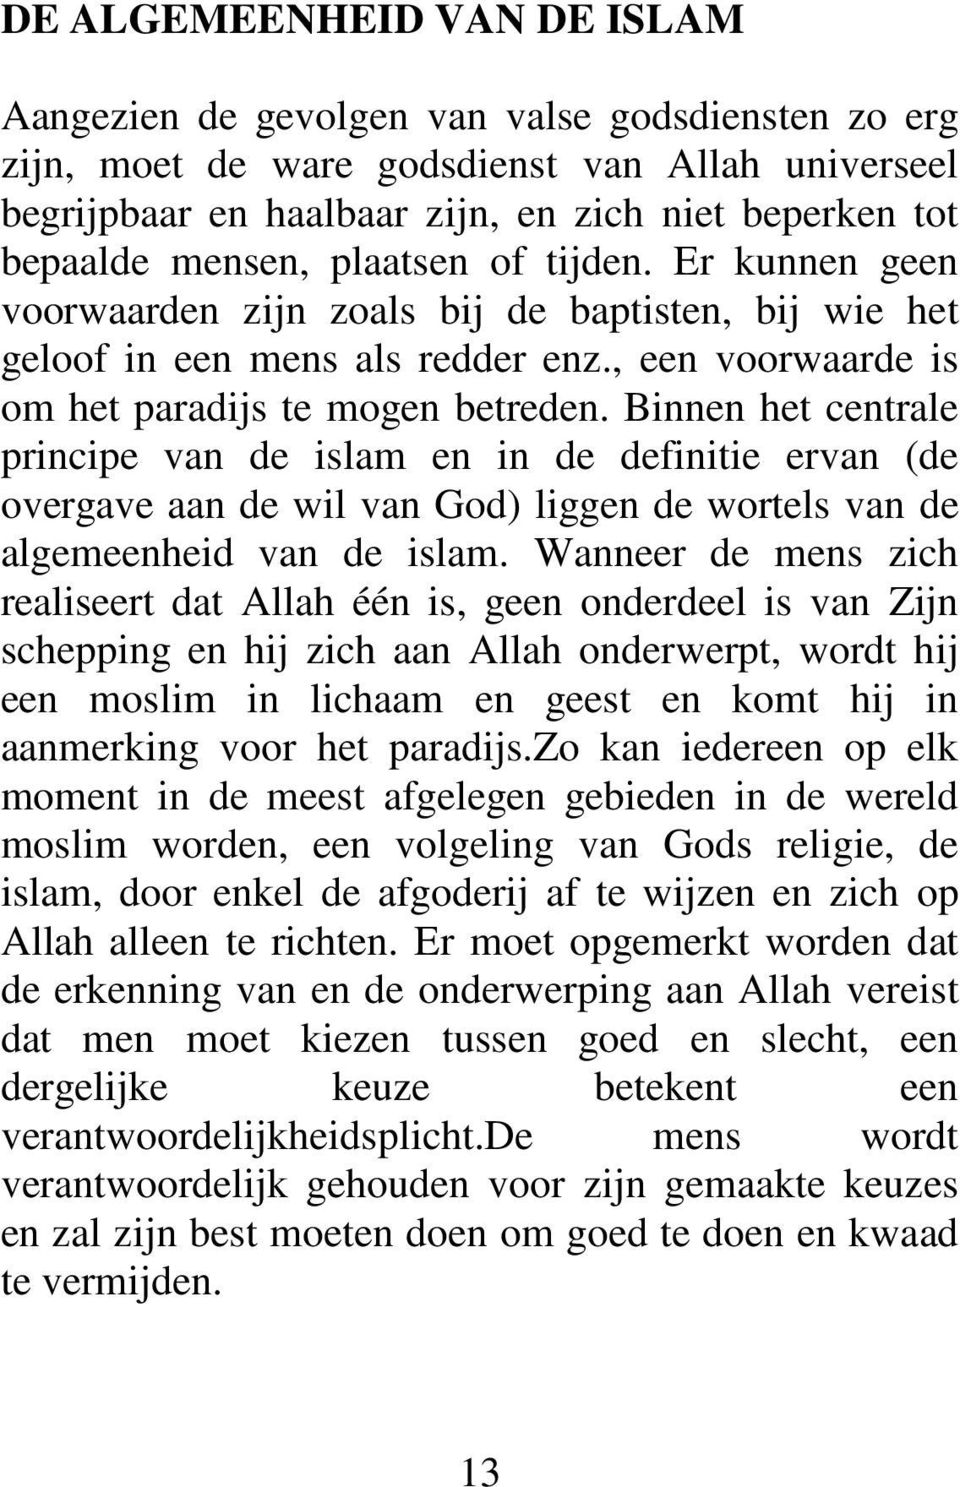 Binnen het centrale principe van de islam en in de definitie ervan (de overgave aan de wil van God) liggen de wortels van de algemeenheid van de islam.